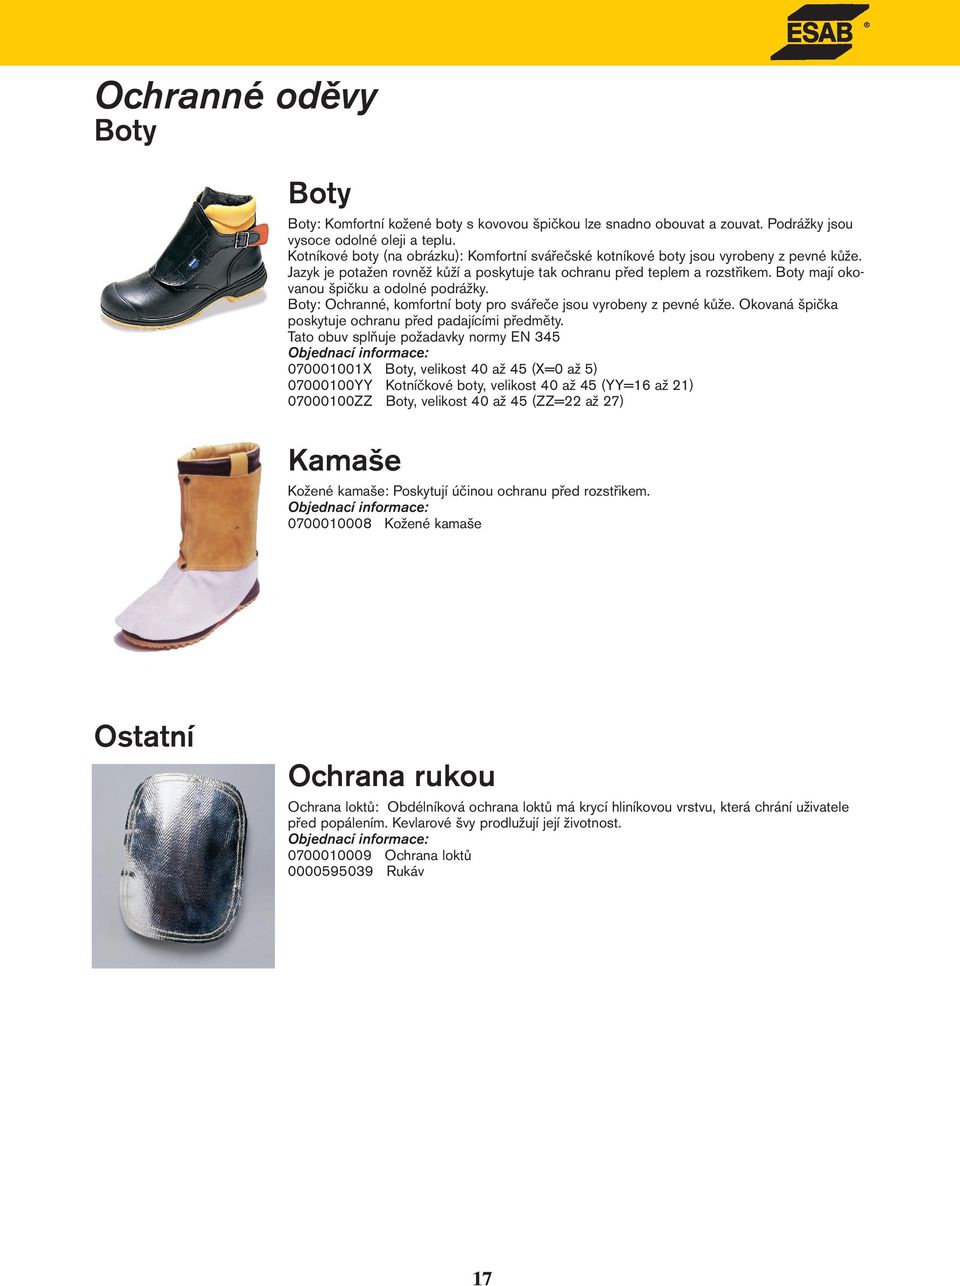 Boty mají okovanou špičku a odolné podrážky. Boty: Ochranné, komfortní boty pro svářeče jsou vyrobeny z pevné kůže. Okovaná špička poskytuje ochranu před padajícími předměty.